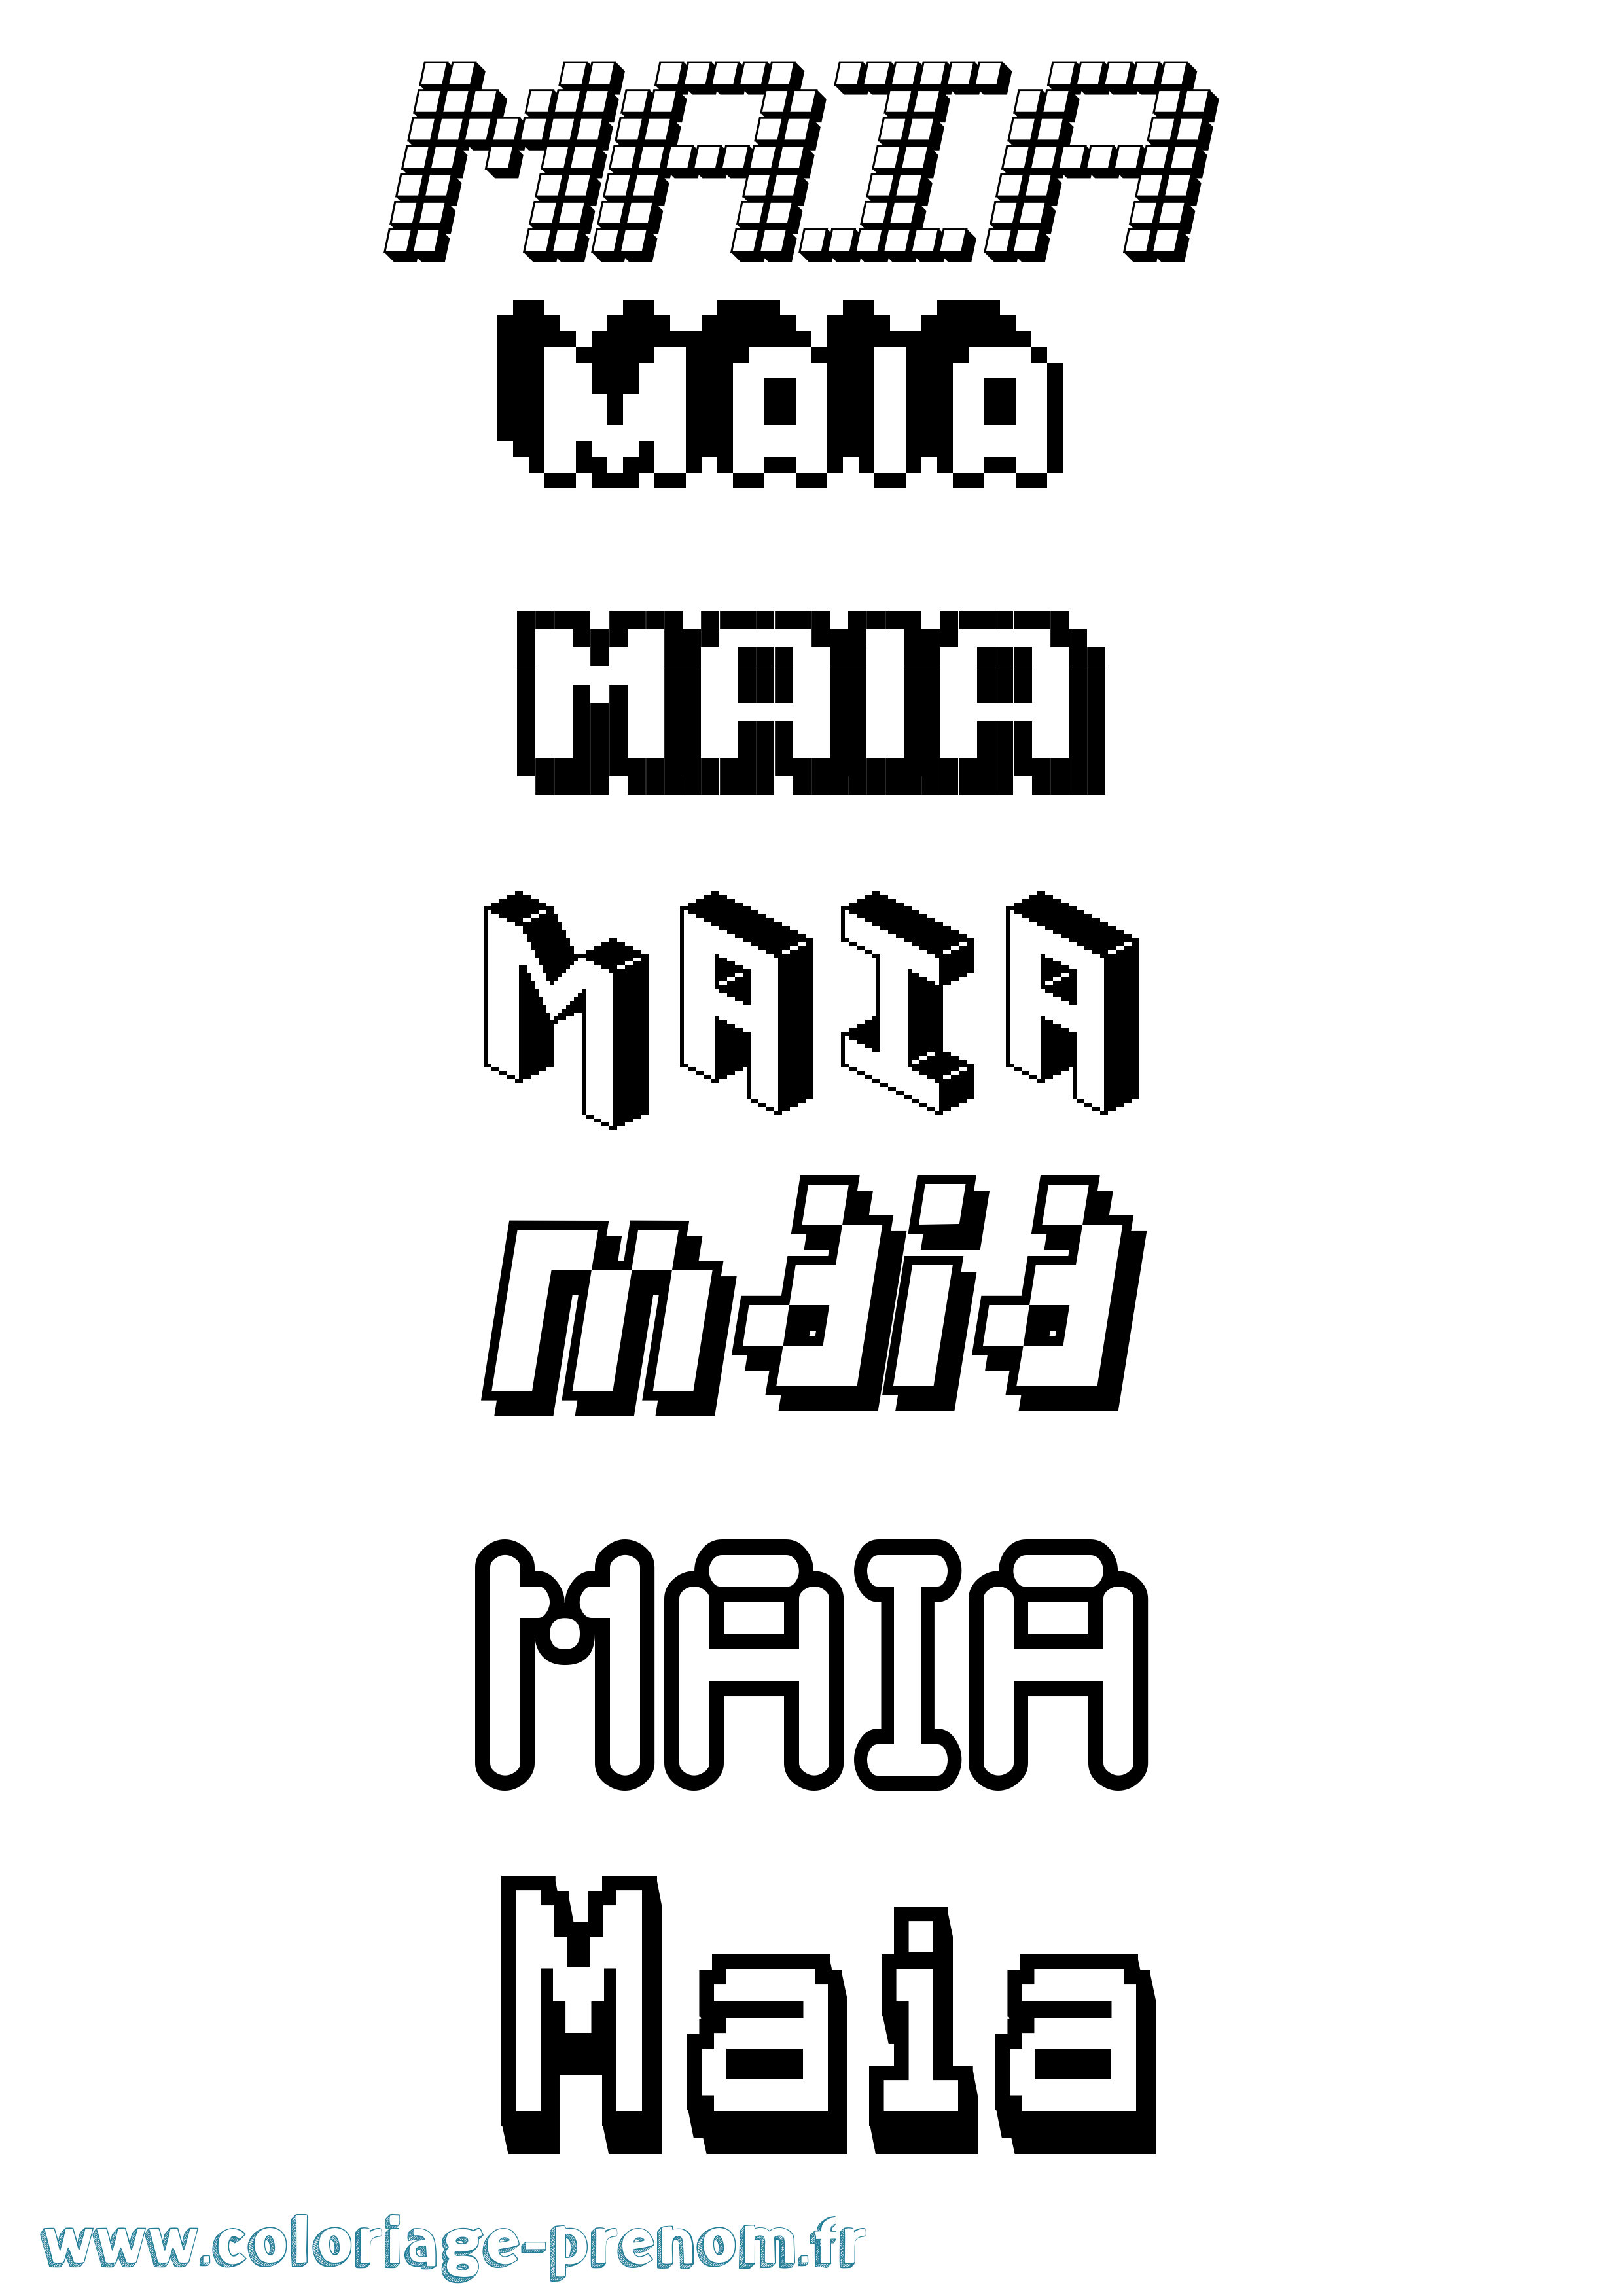 Coloriage prénom Maia